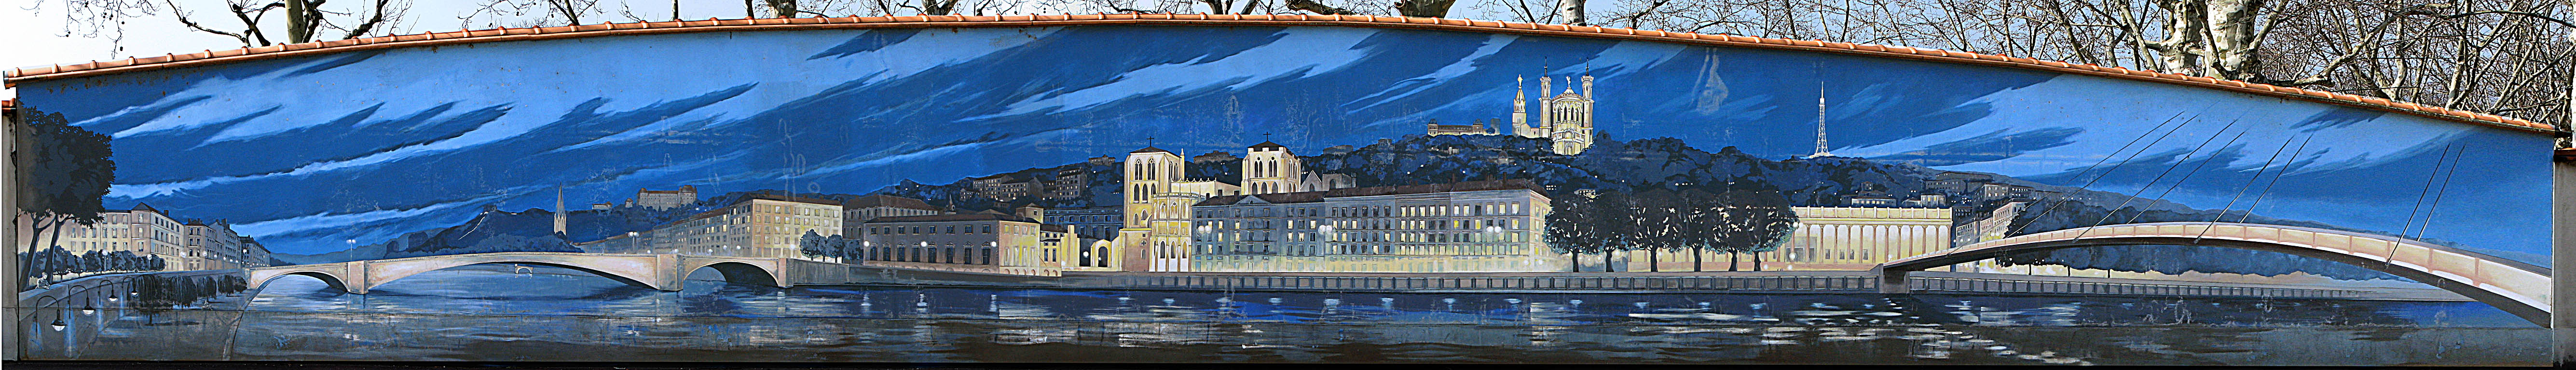 Lyon Patrimoine de l’humanité - Saint Jean de Dieu-  Fresque du Demi-Millénaire  -290 route de vienne Lyon 8ème